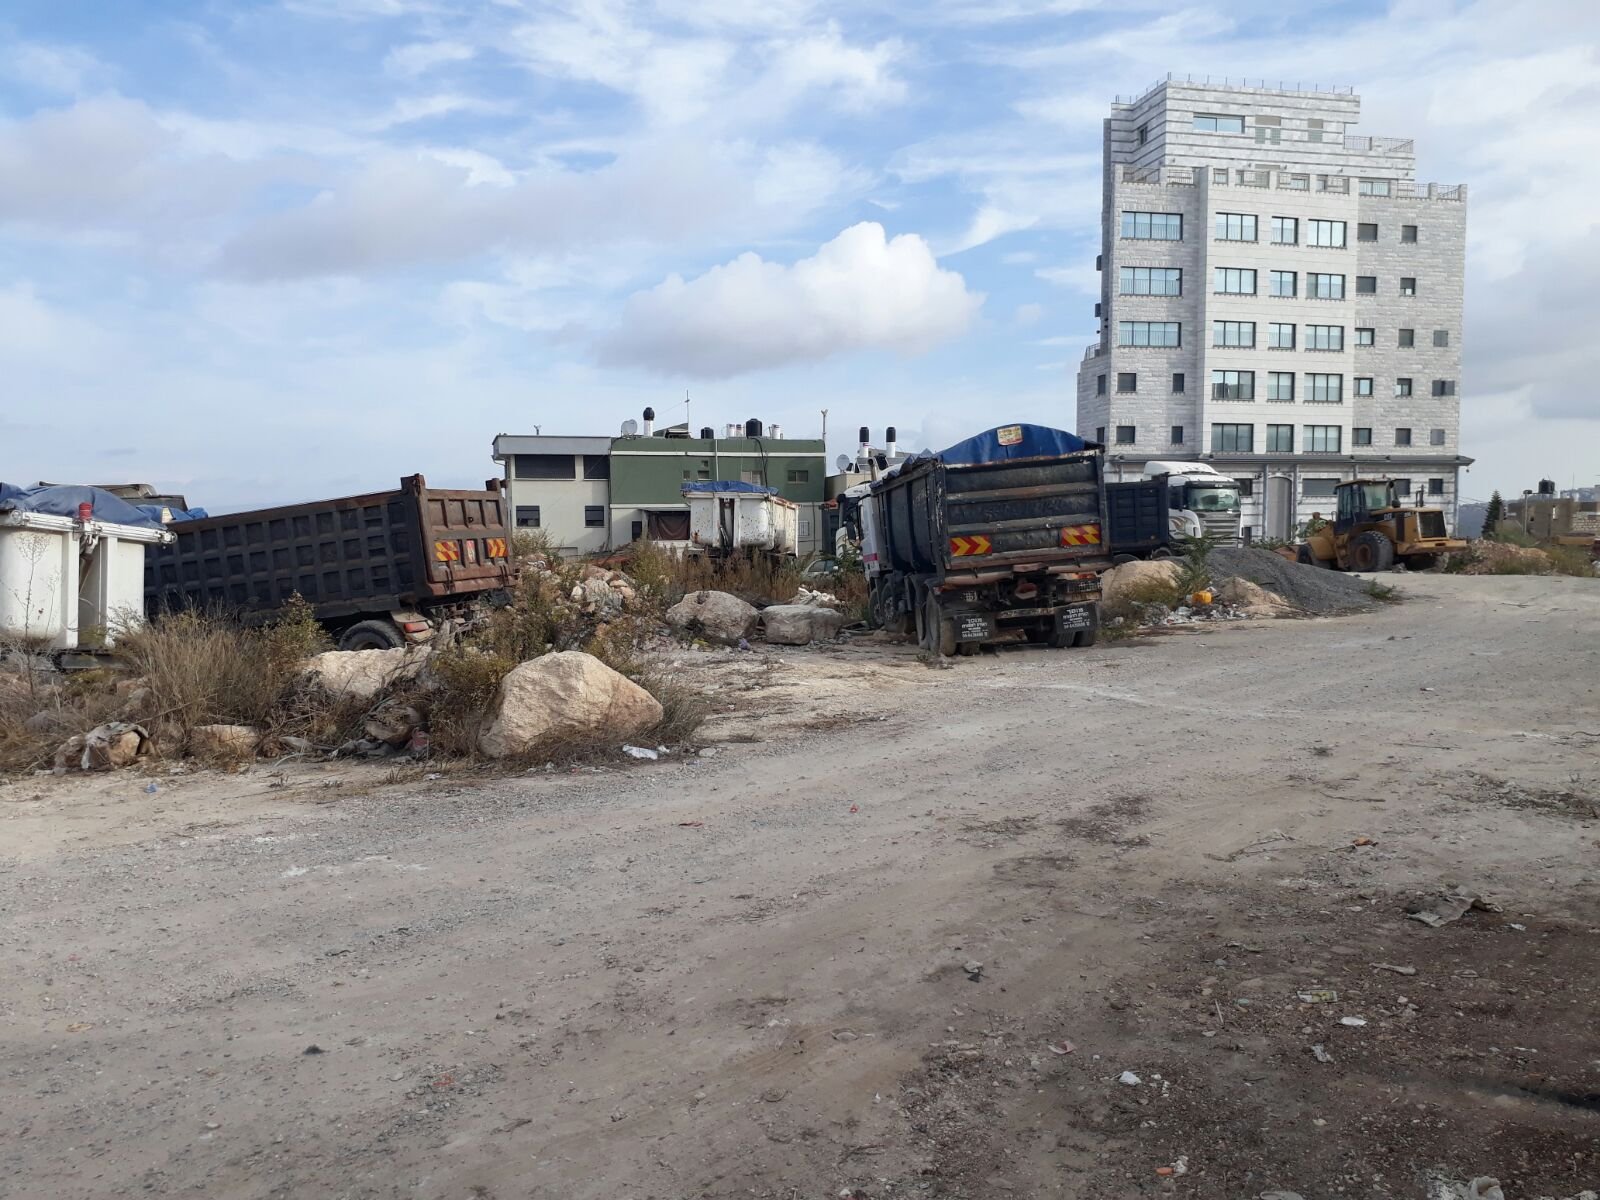 وحدة البيئة في بلدية الناصرة وحملة تنظيف واخلاء مركبات قديمة-2